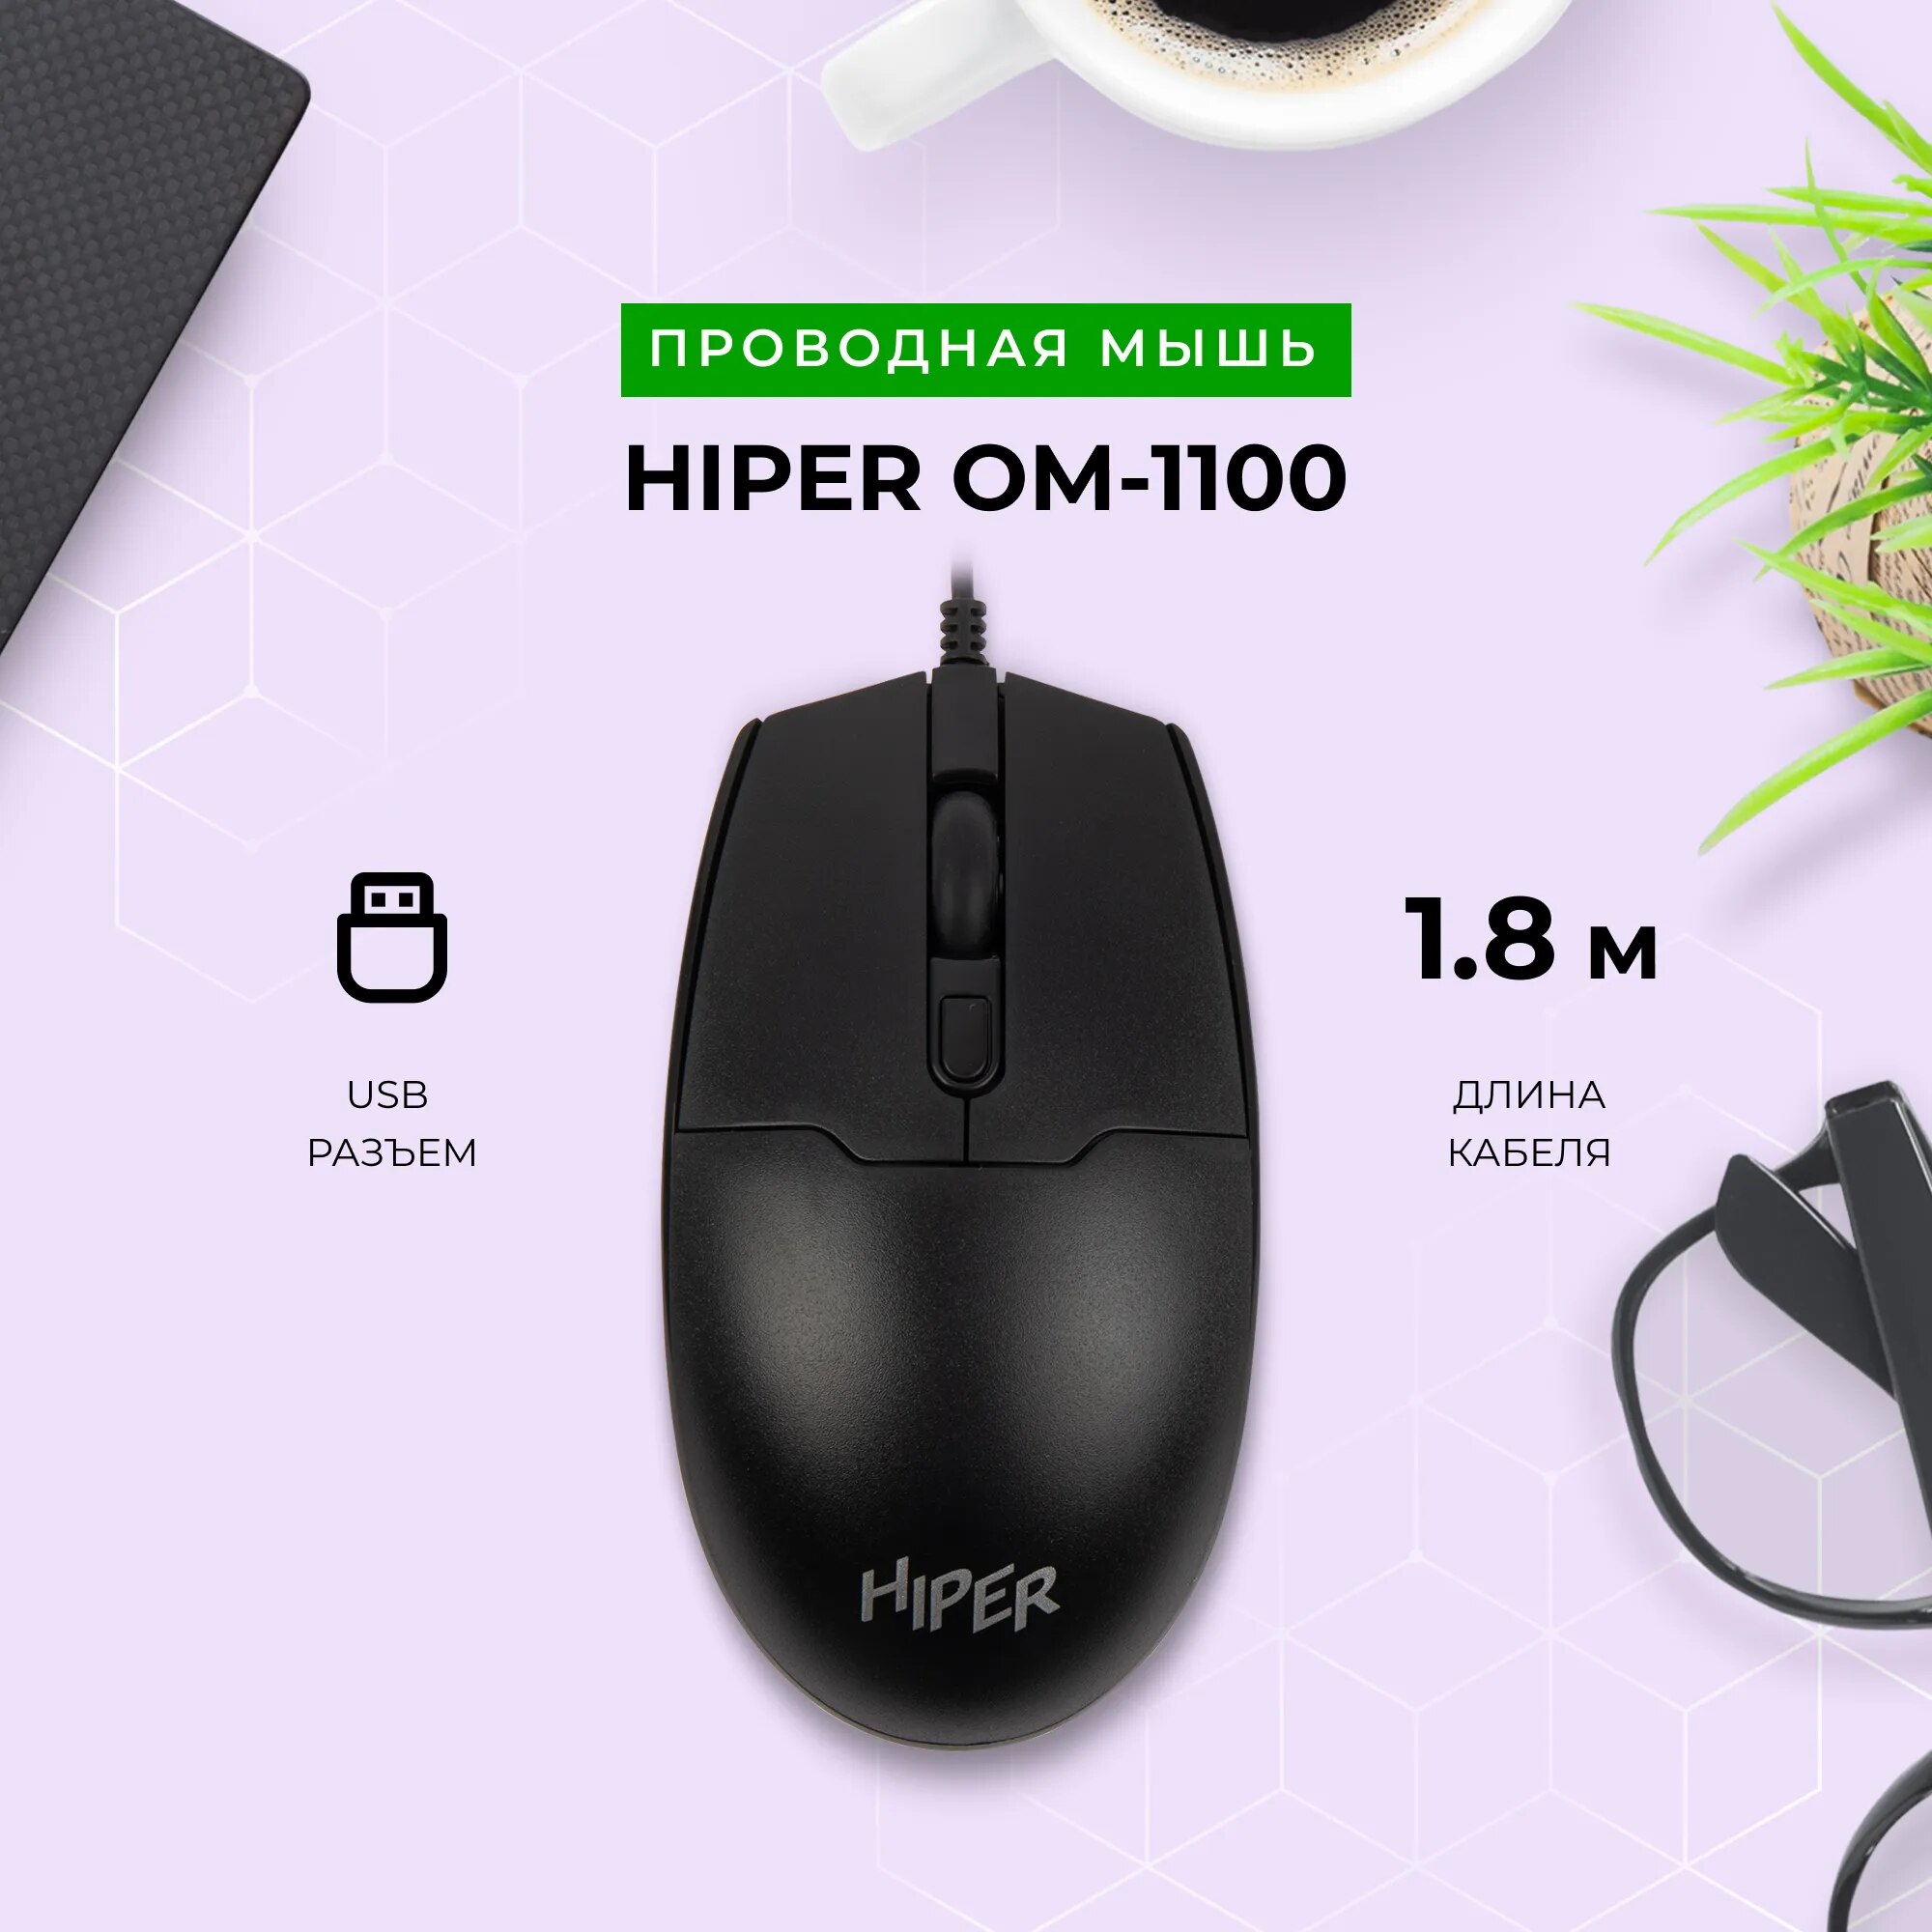 Проводная мышь HIPER OM-1100 черная